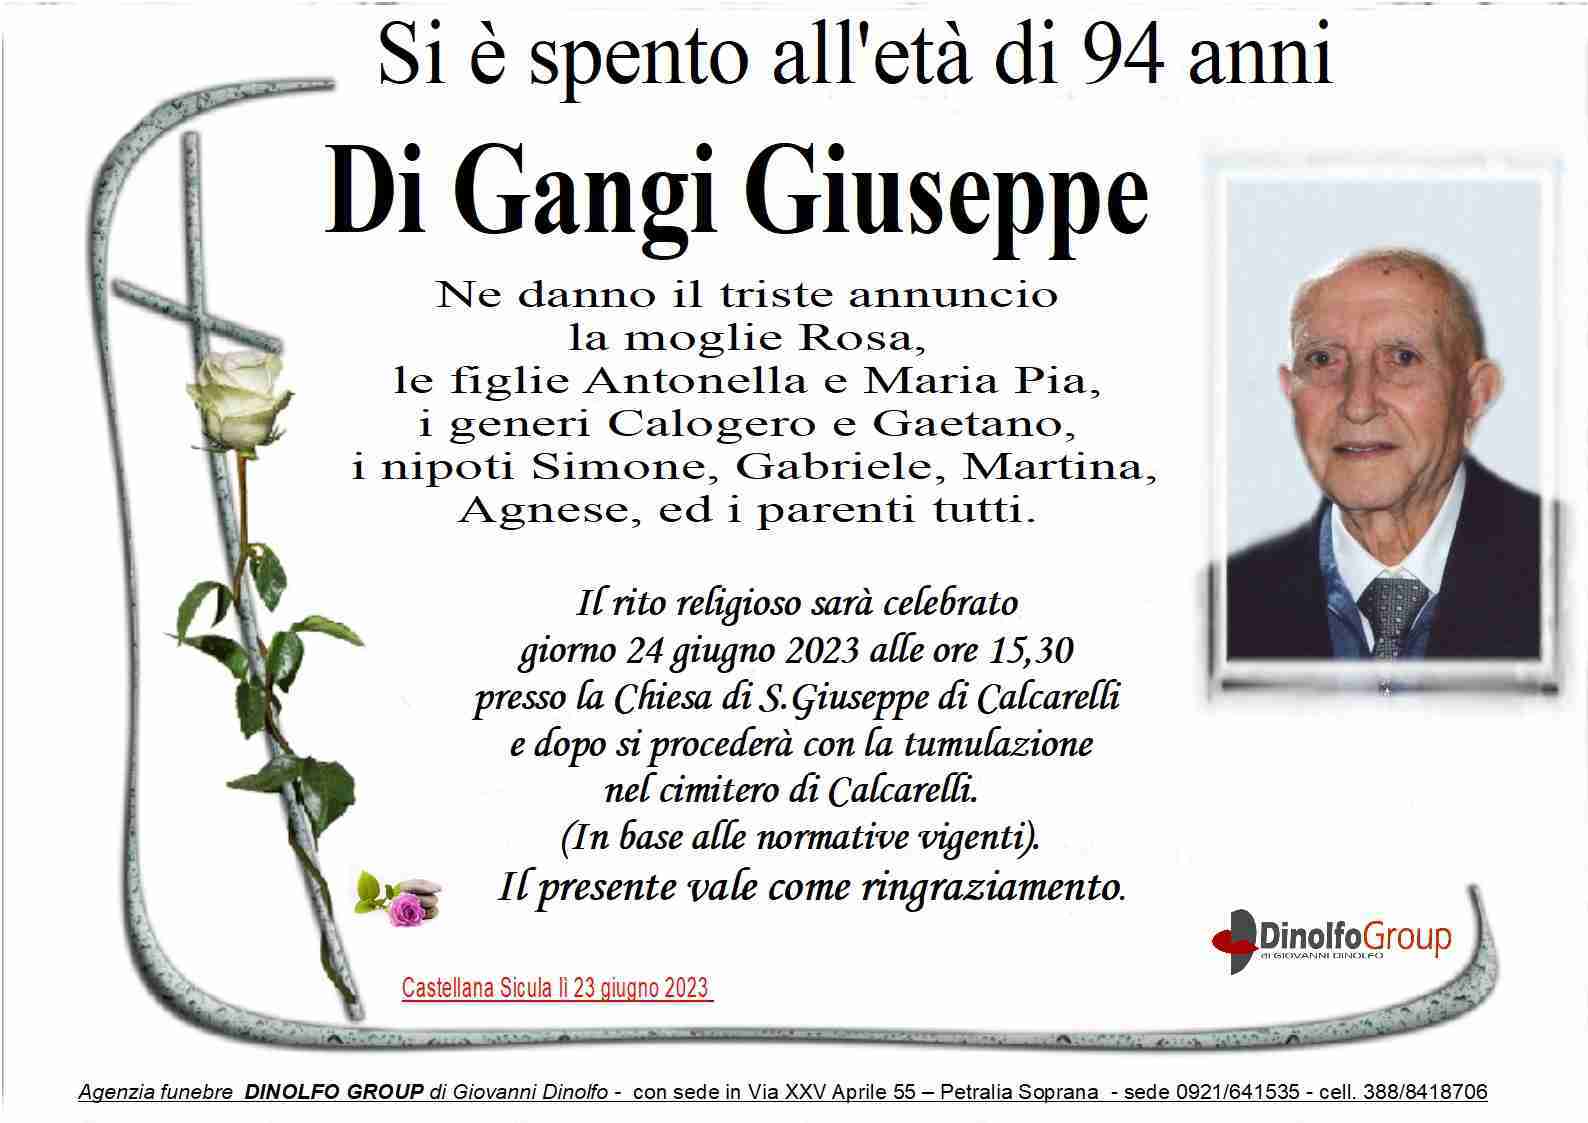 Giuseppe Di Gangi